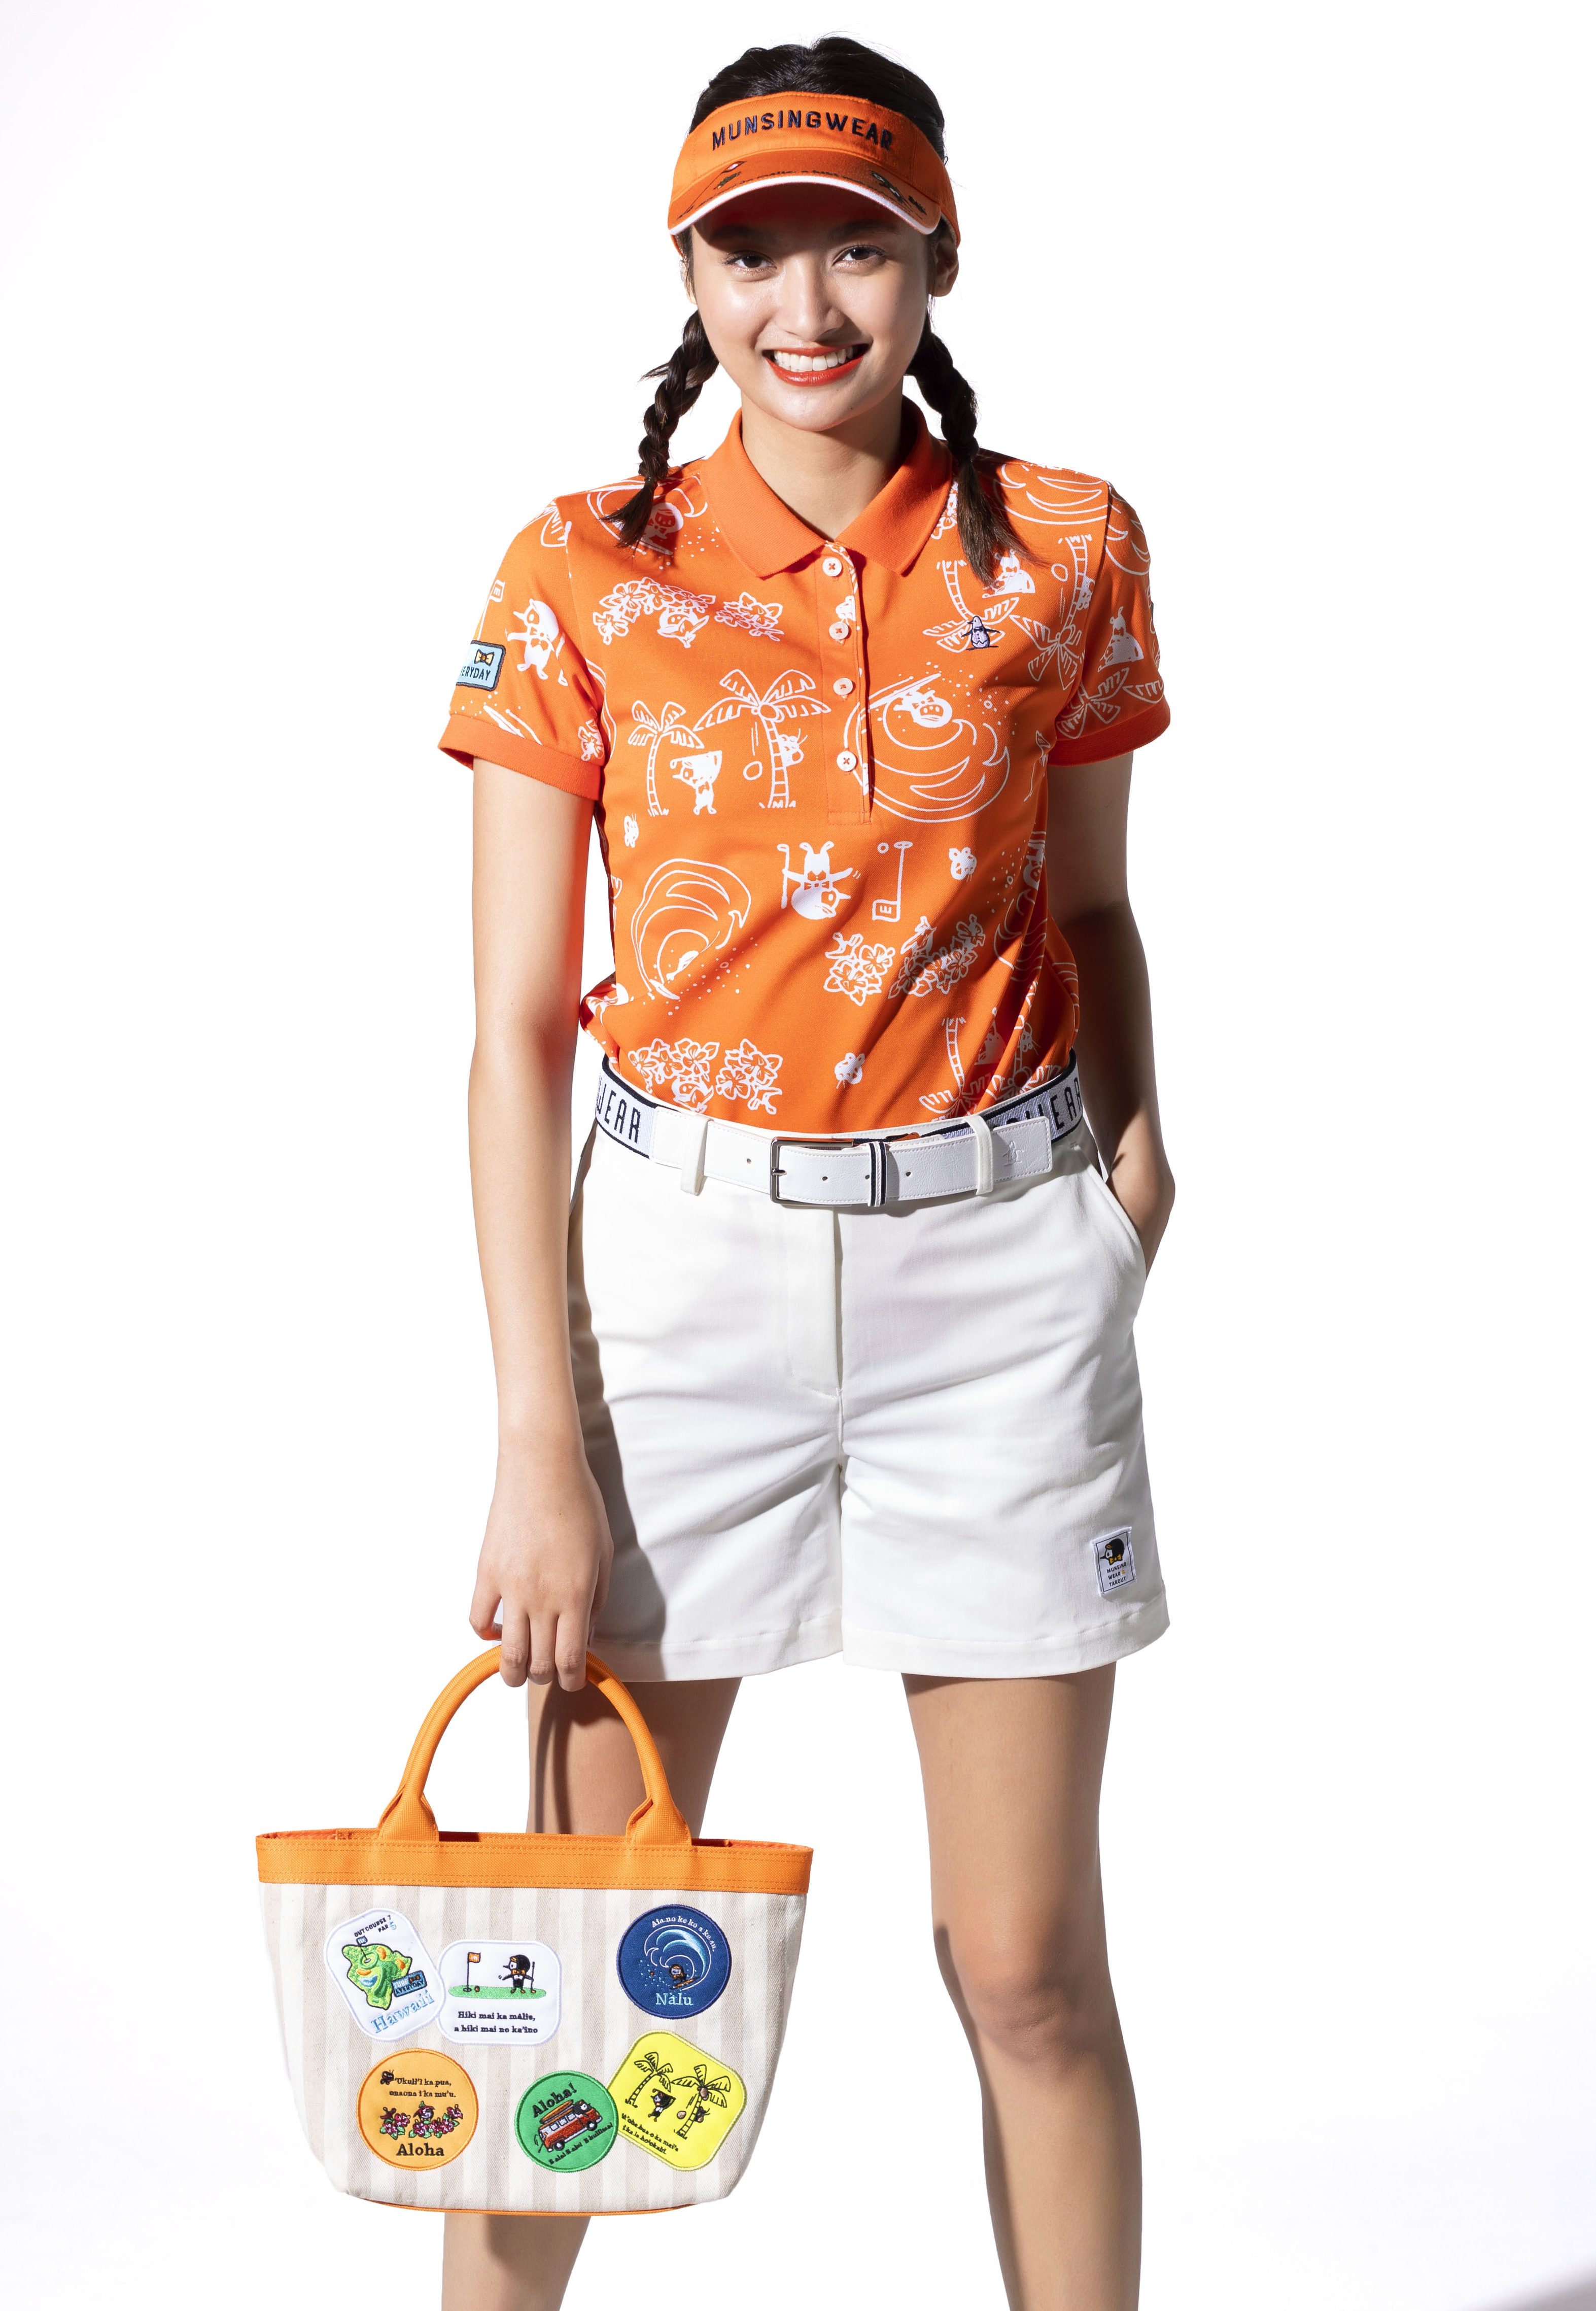 ハワイライフを楽しんでいるリトルピートが描かれた総柄シャツは、オレンジカラーで夏ならではの元気な着こなしに。ホワイトのショートパンツは後ろのポケットにもリトルピートの刺繍が施されていて、遊び心をON！　ポロシャツ￥18,000、ショートパンツ￥17,000、サンバイザー￥4,900、ベルト￥8,900 バッグ￥9,800（以上マンシングウェア／デサントジャパン）